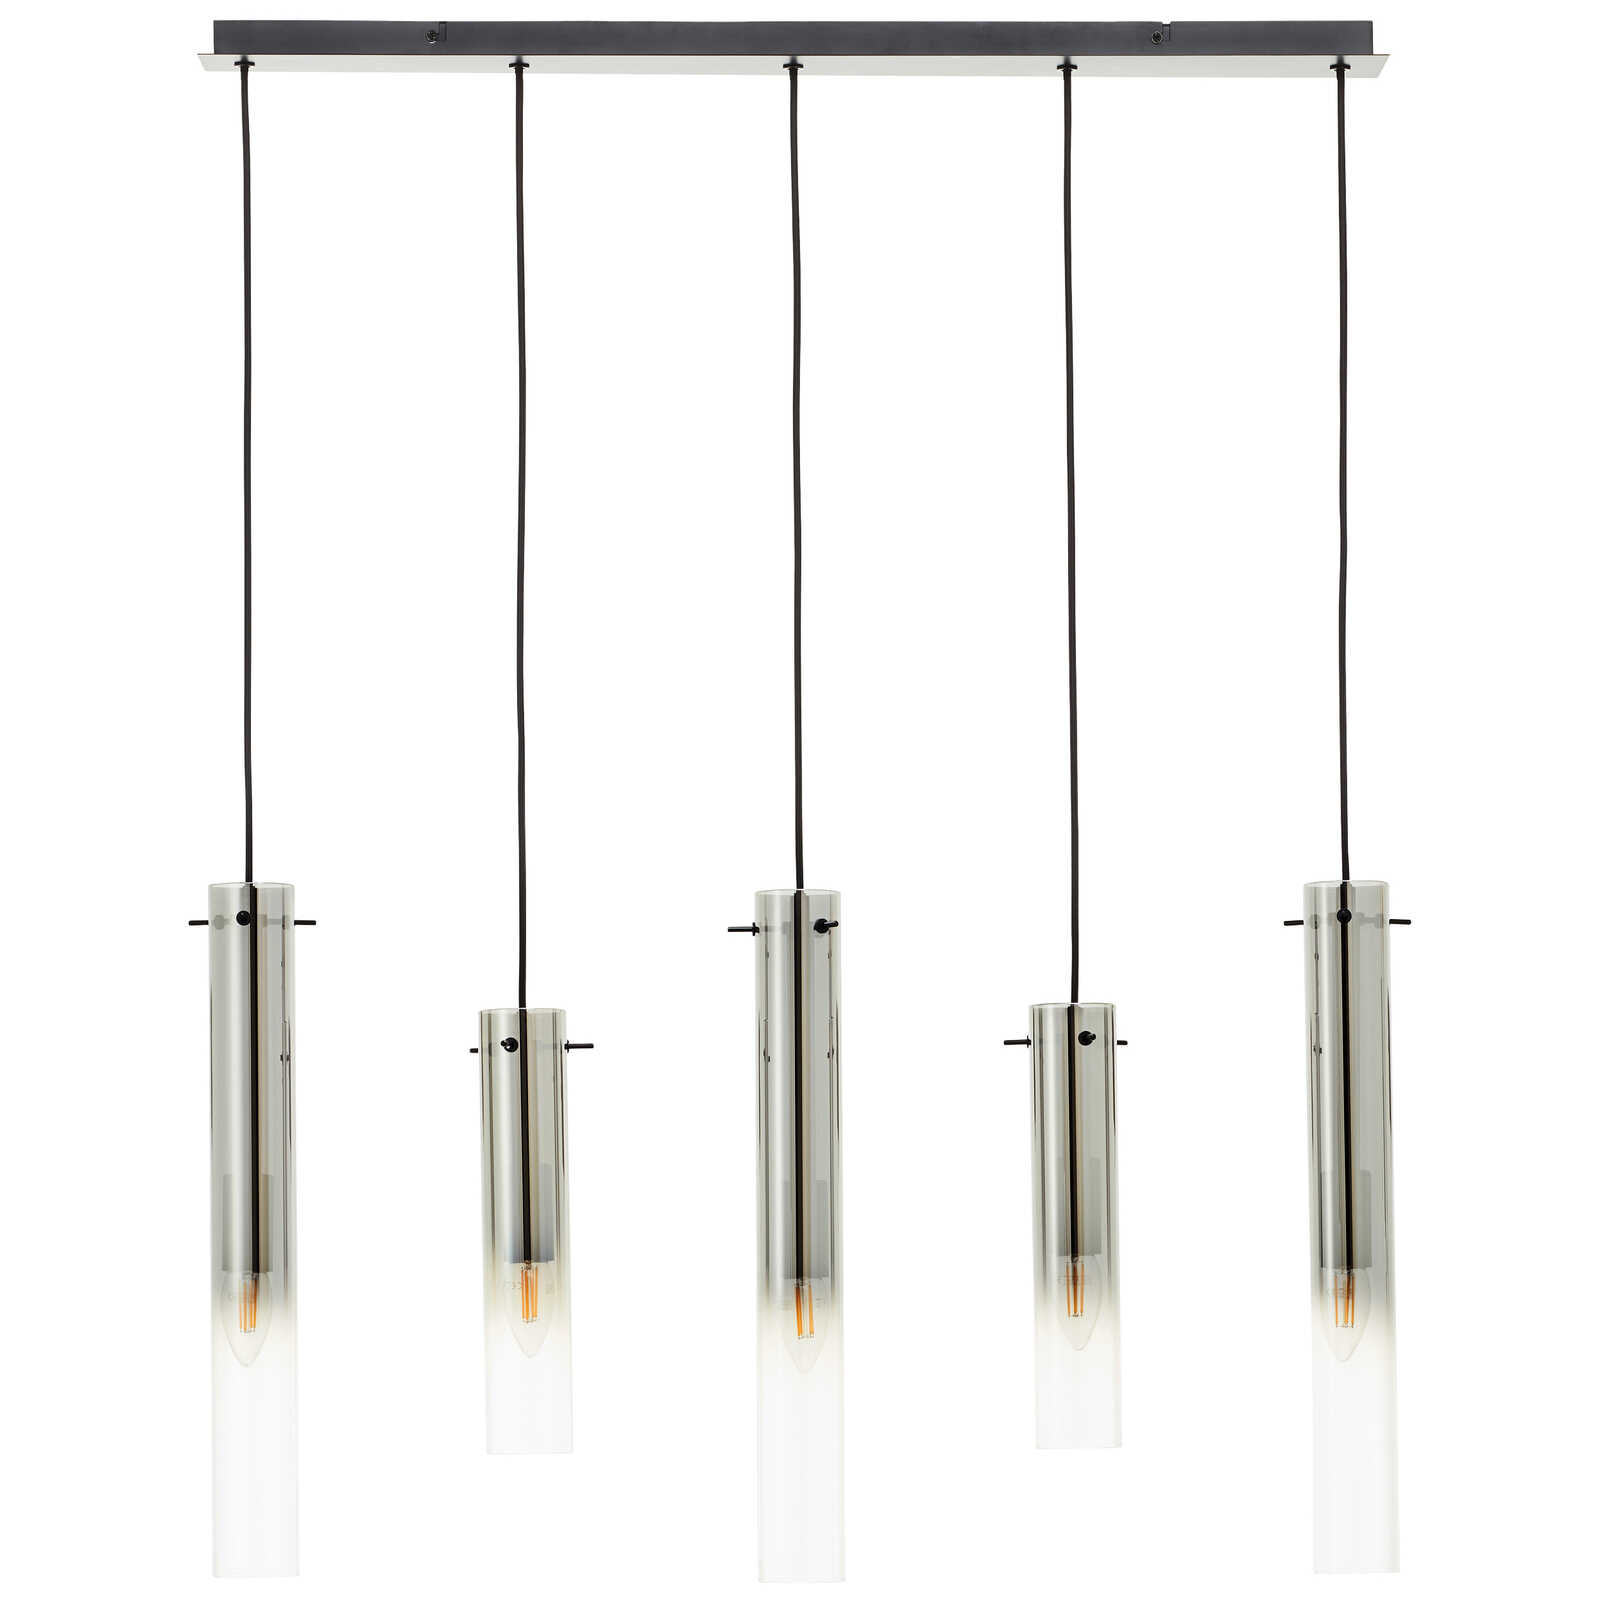             Metalen hanglamp - Hilla 1 - Grijs
        